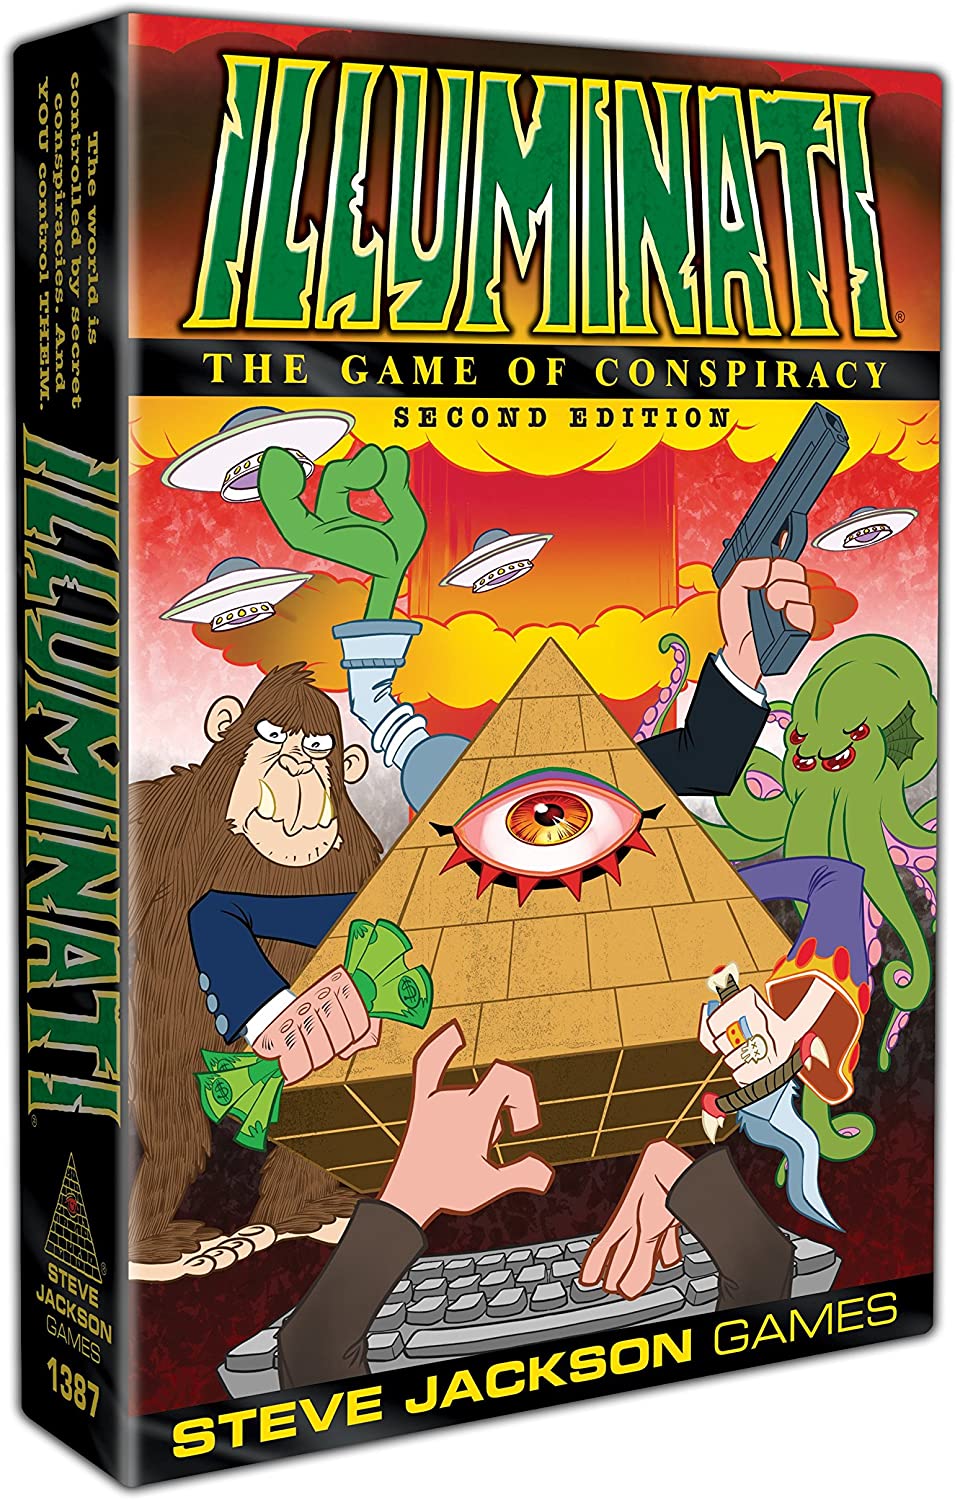 Steve Jackson Games Illuminati 2nd Edition